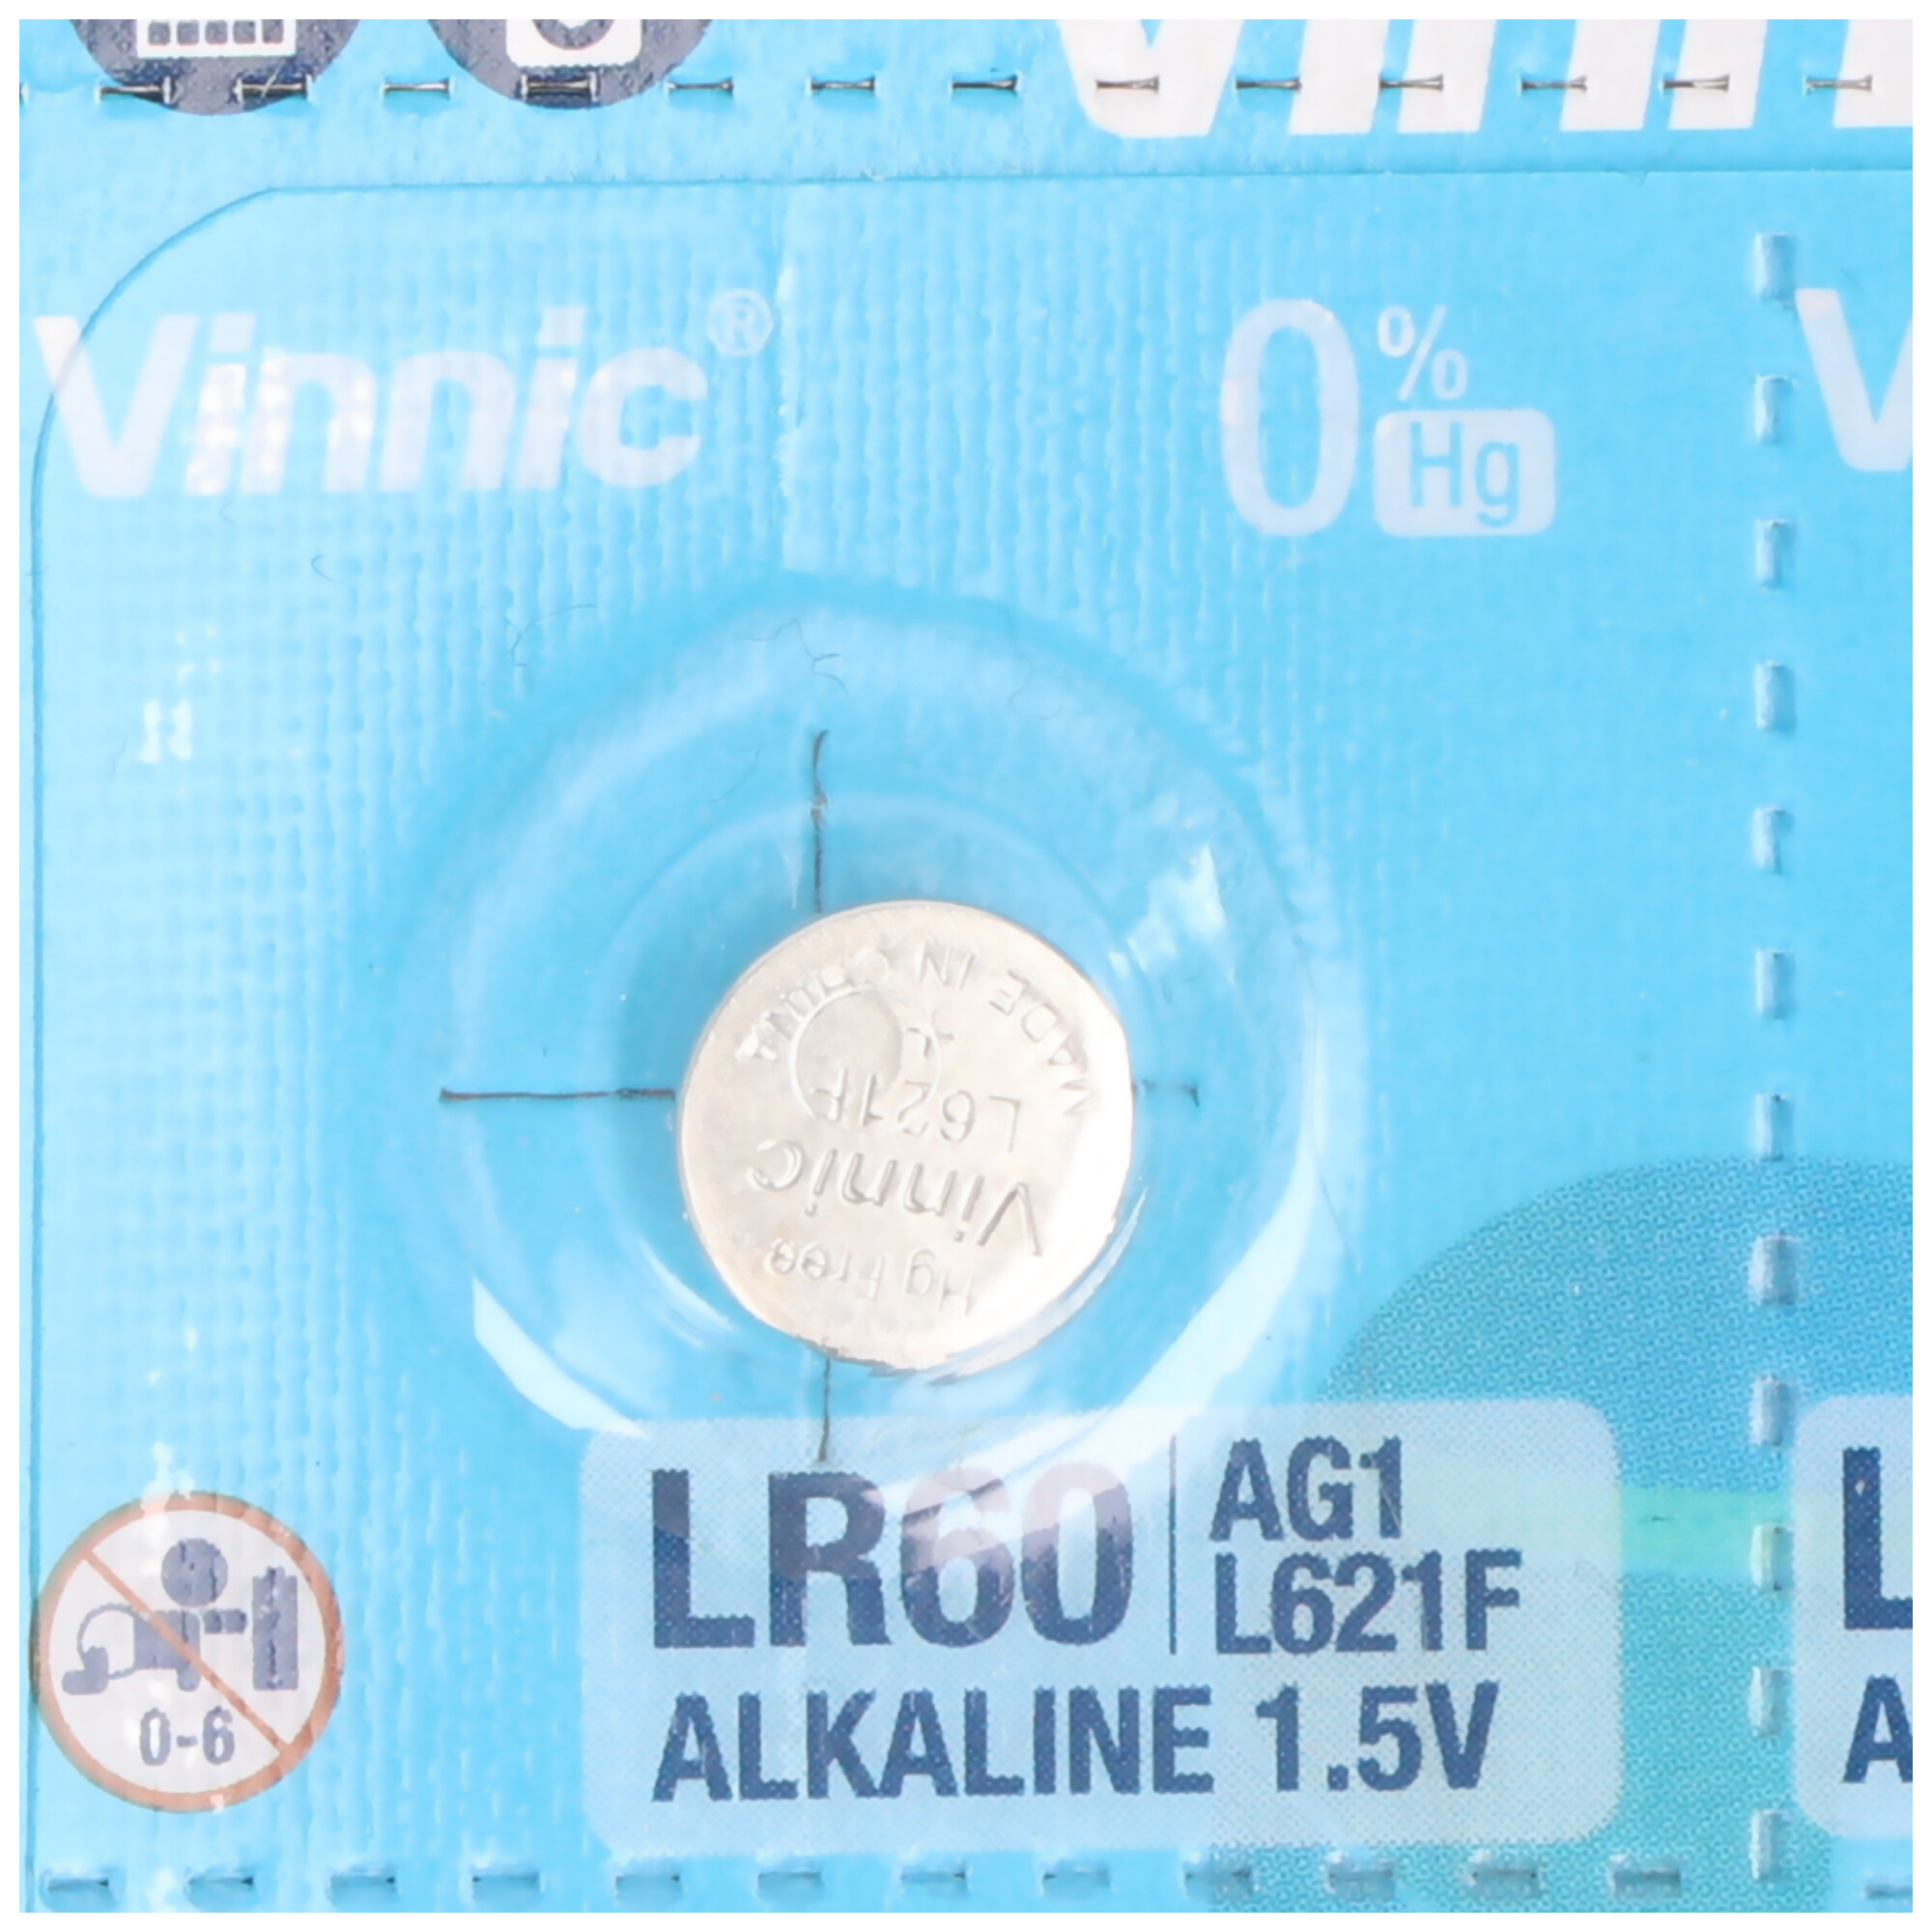 10 Stück AG1 Alkaline-Einweg-Batterie Type G1, AG1, L621, LR60, 6,8x6,8x2,15mm